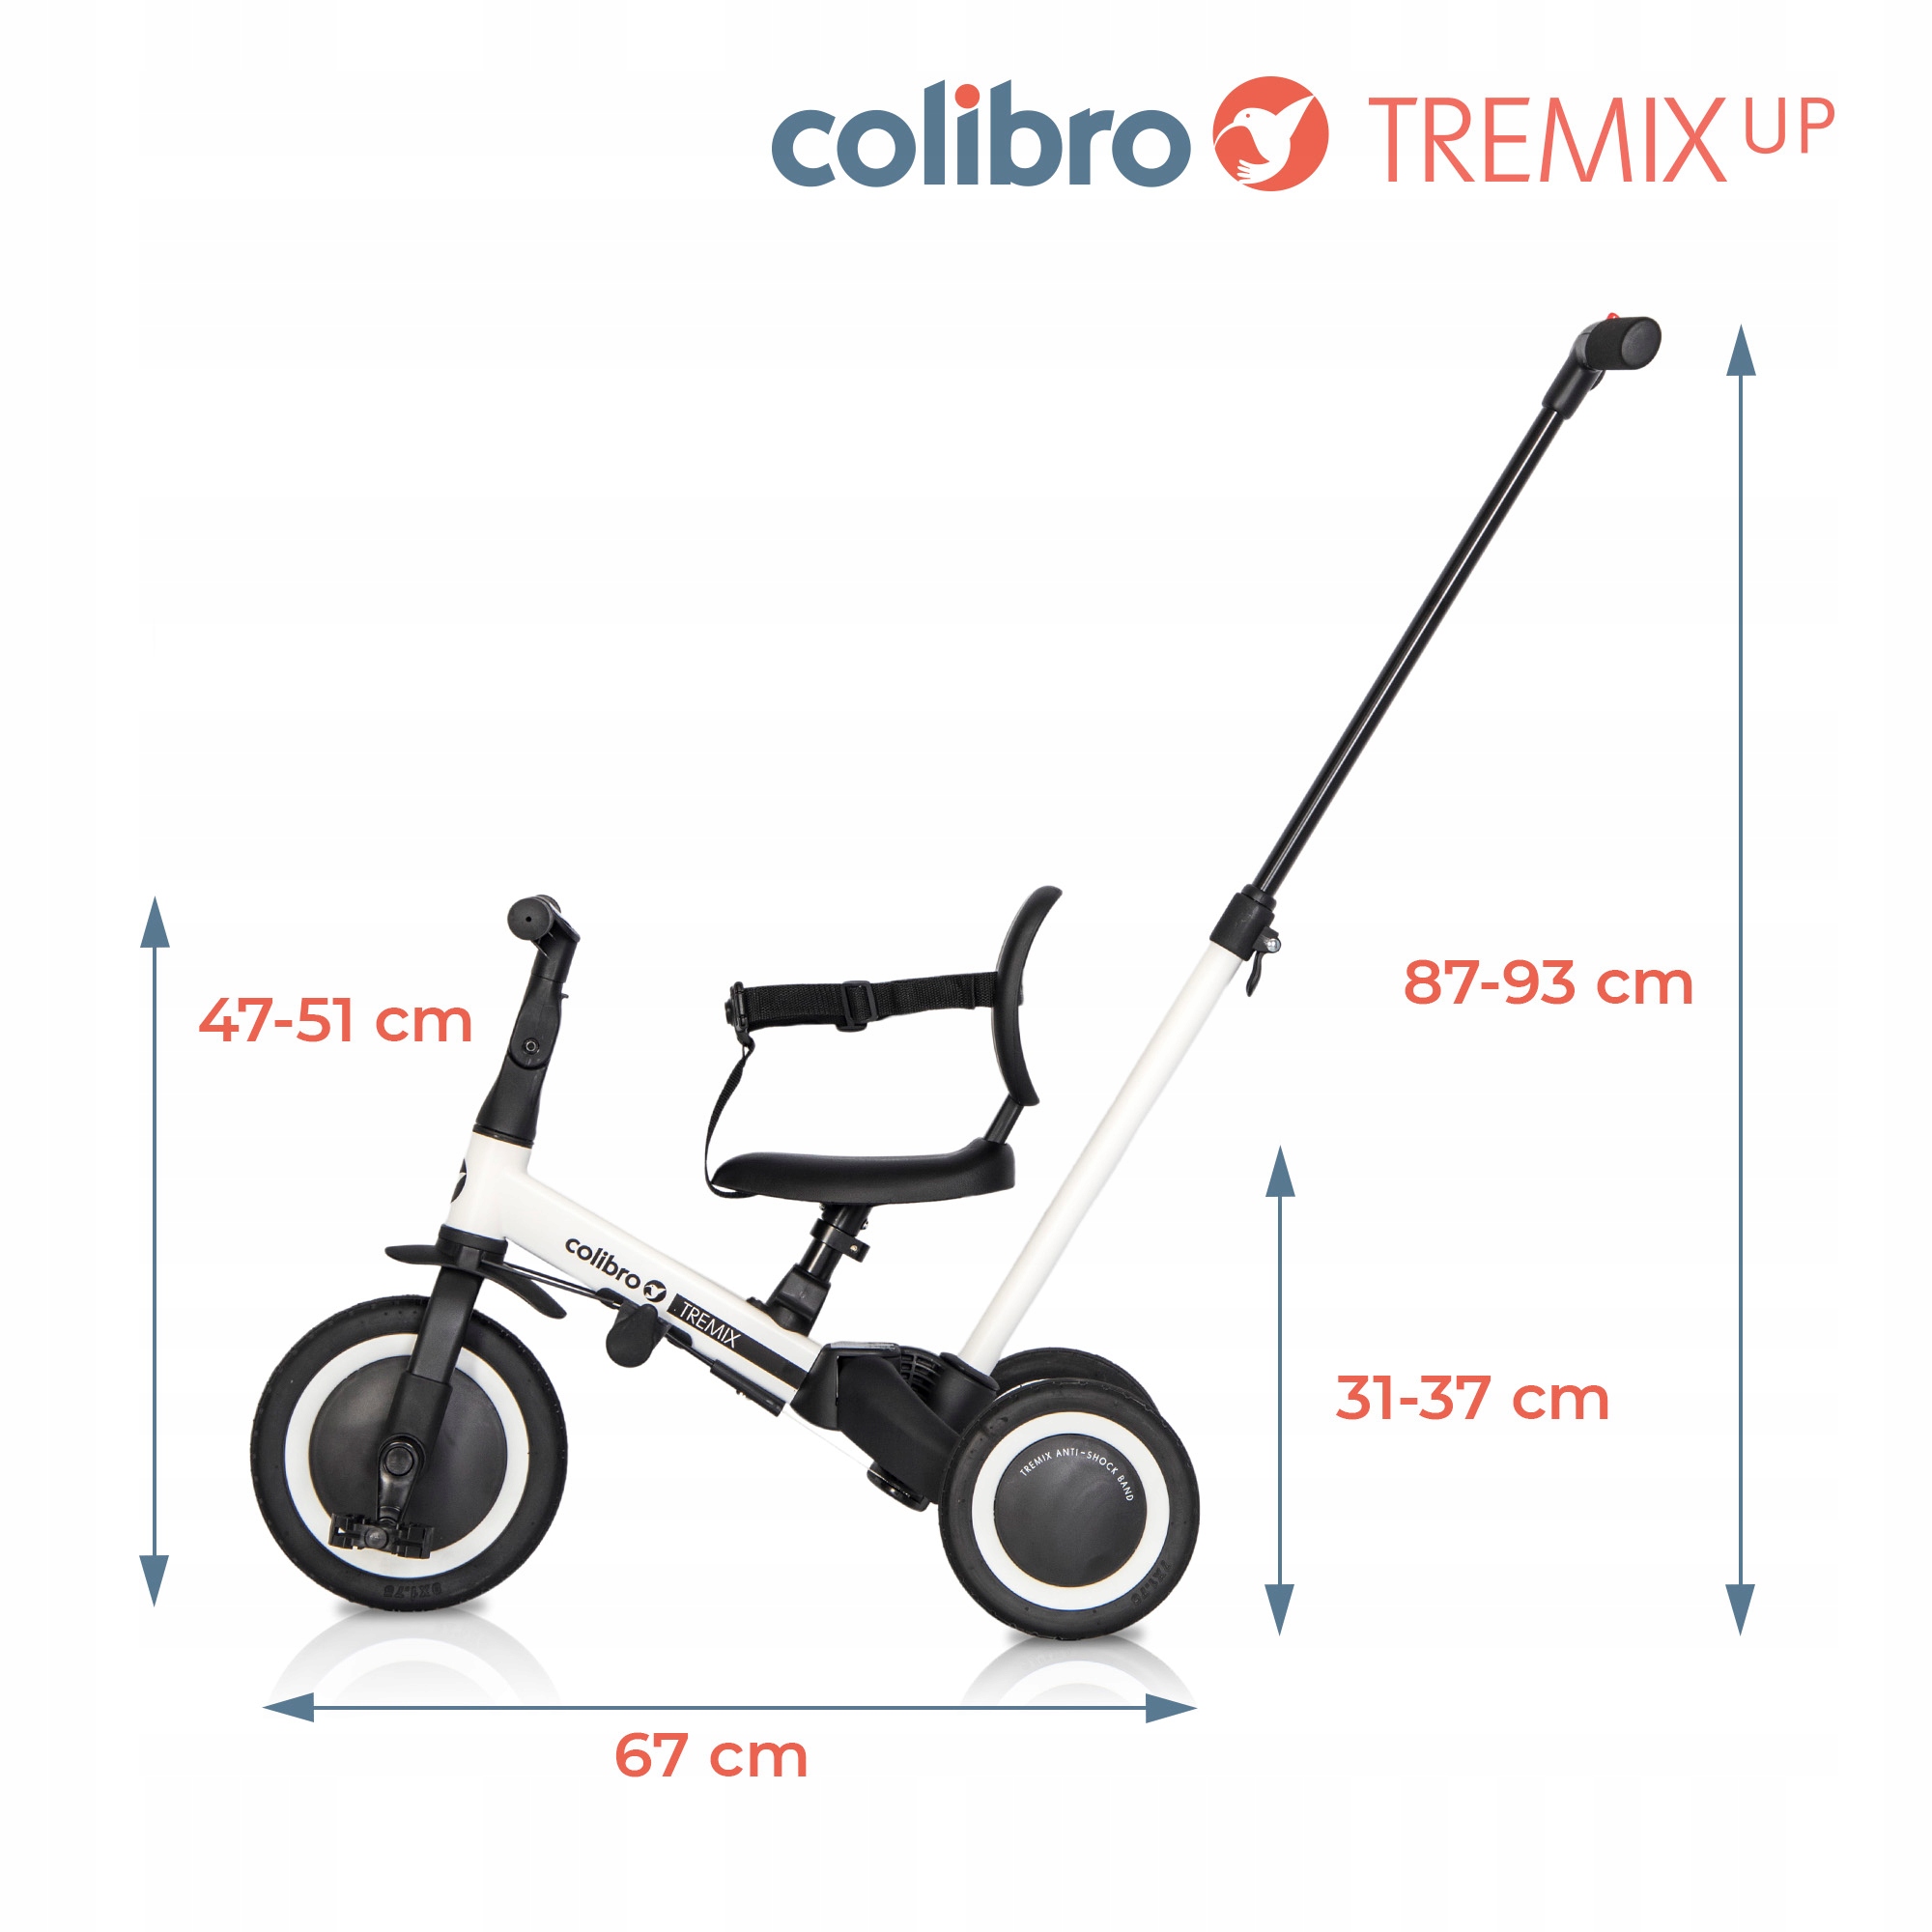 Detský bicykel TREMIX UP 6v1 PROWANIK +++ Vek dieťaťa 1 rok +